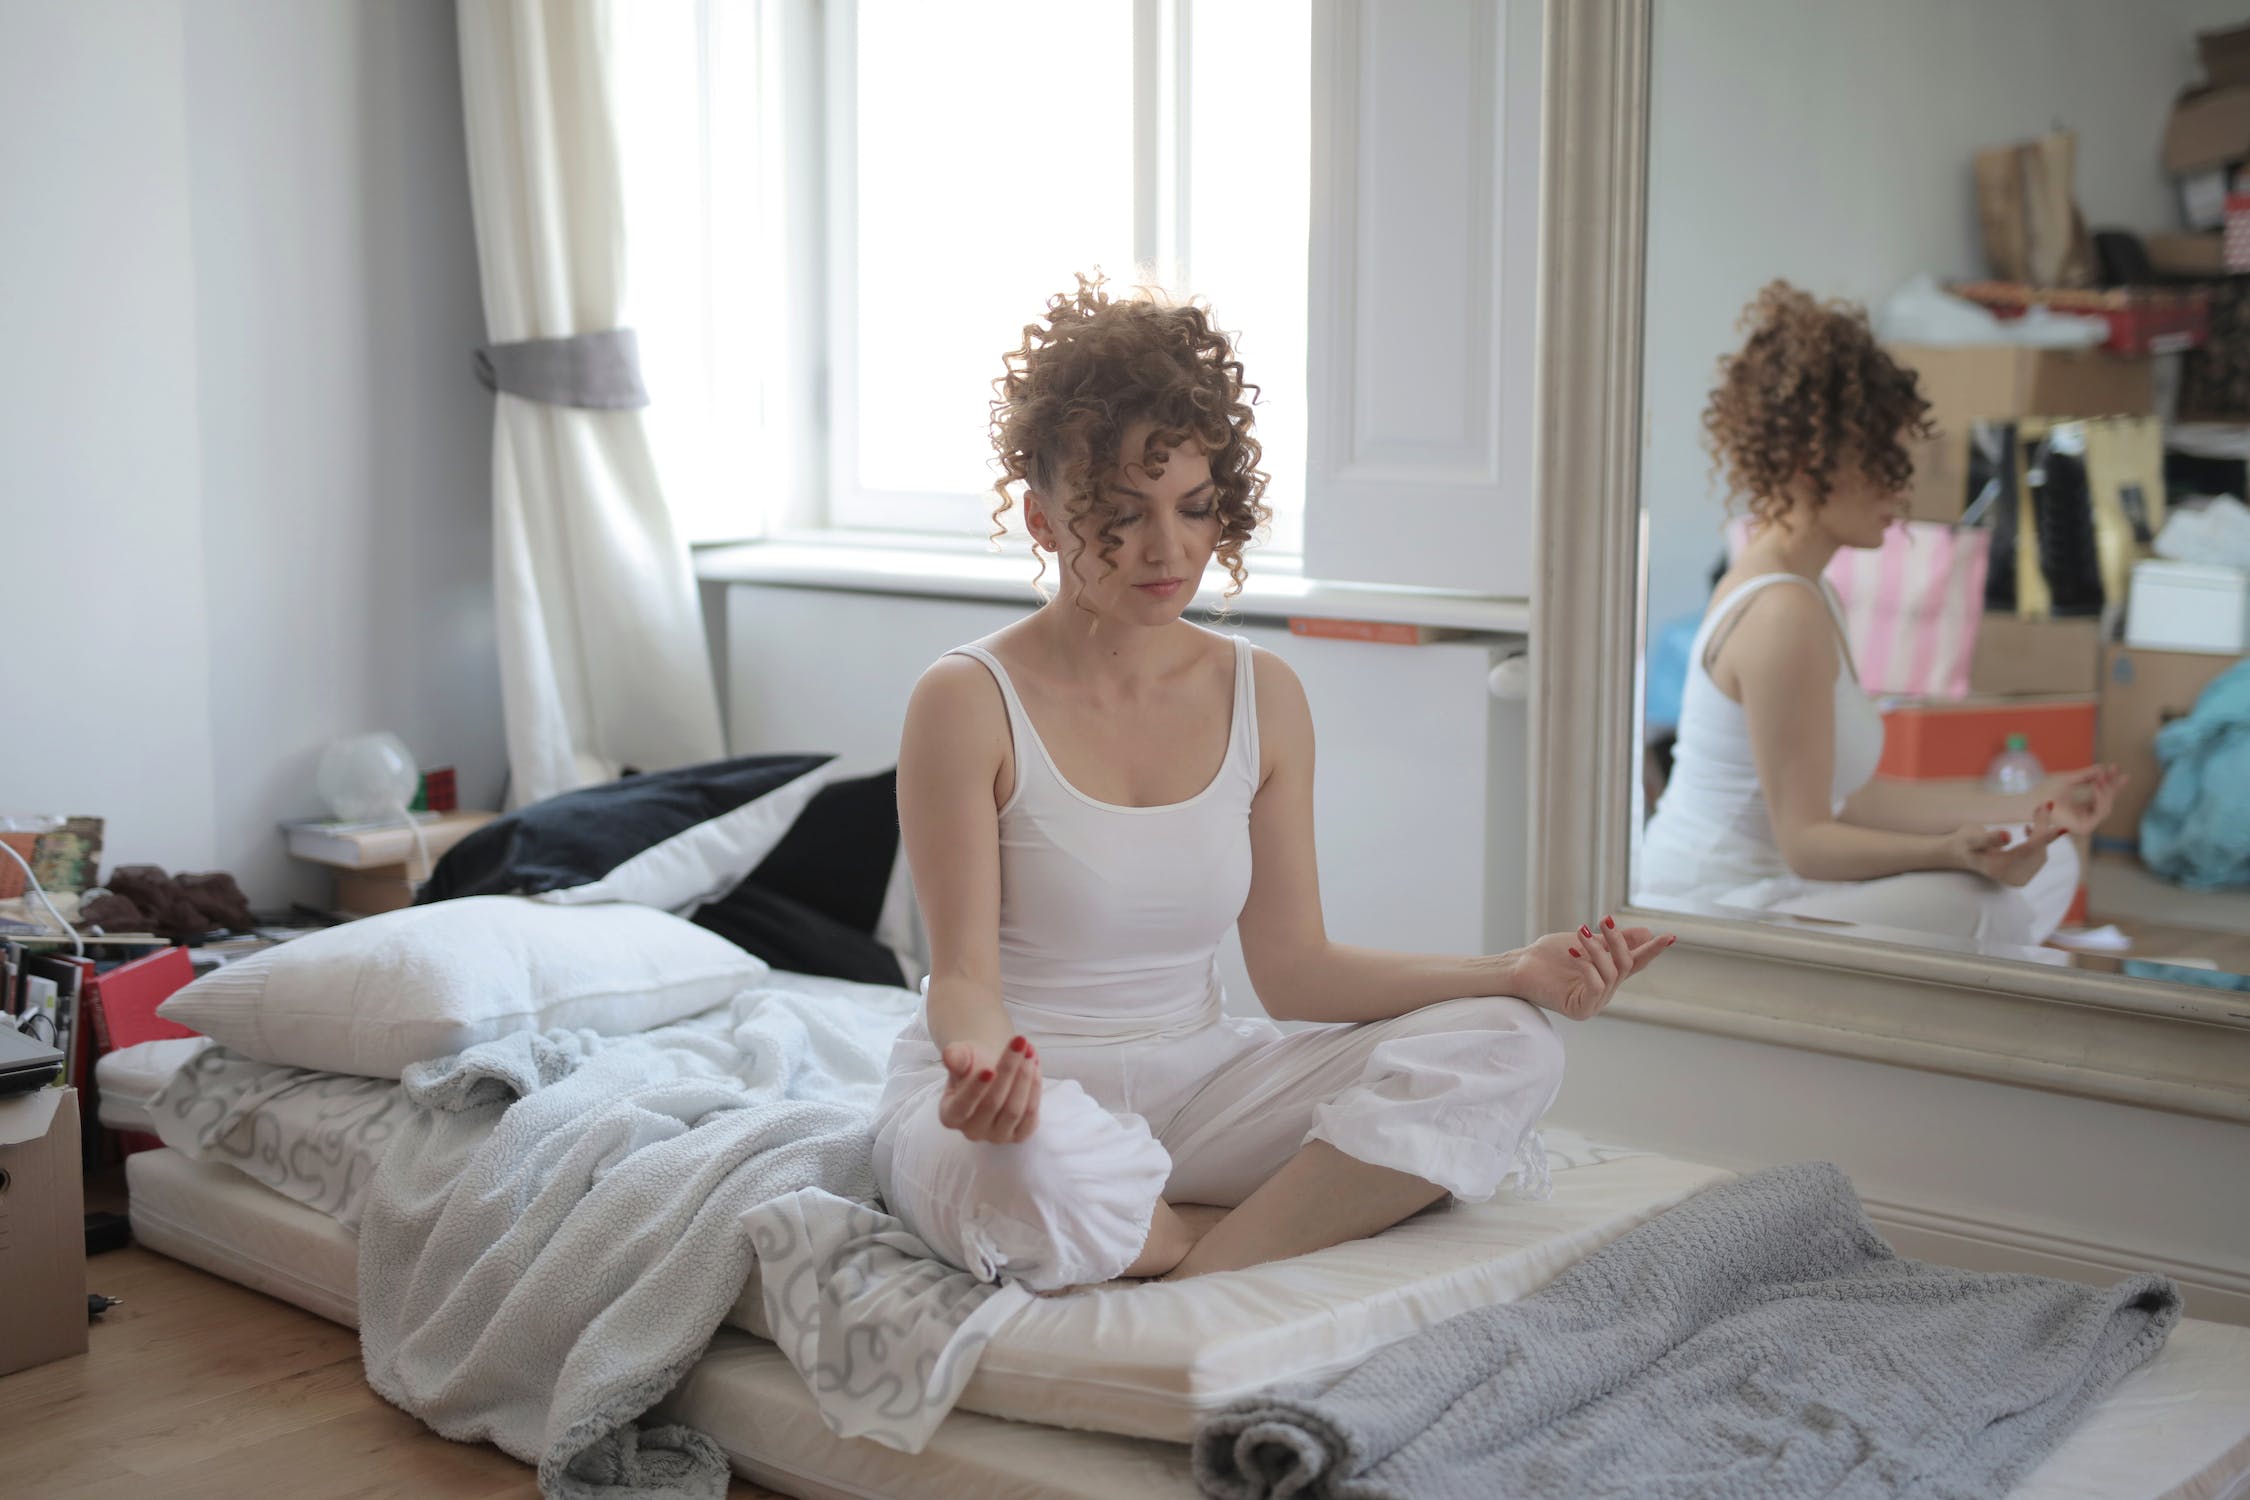 Calm woman in lotus pose meditating after awakening at home